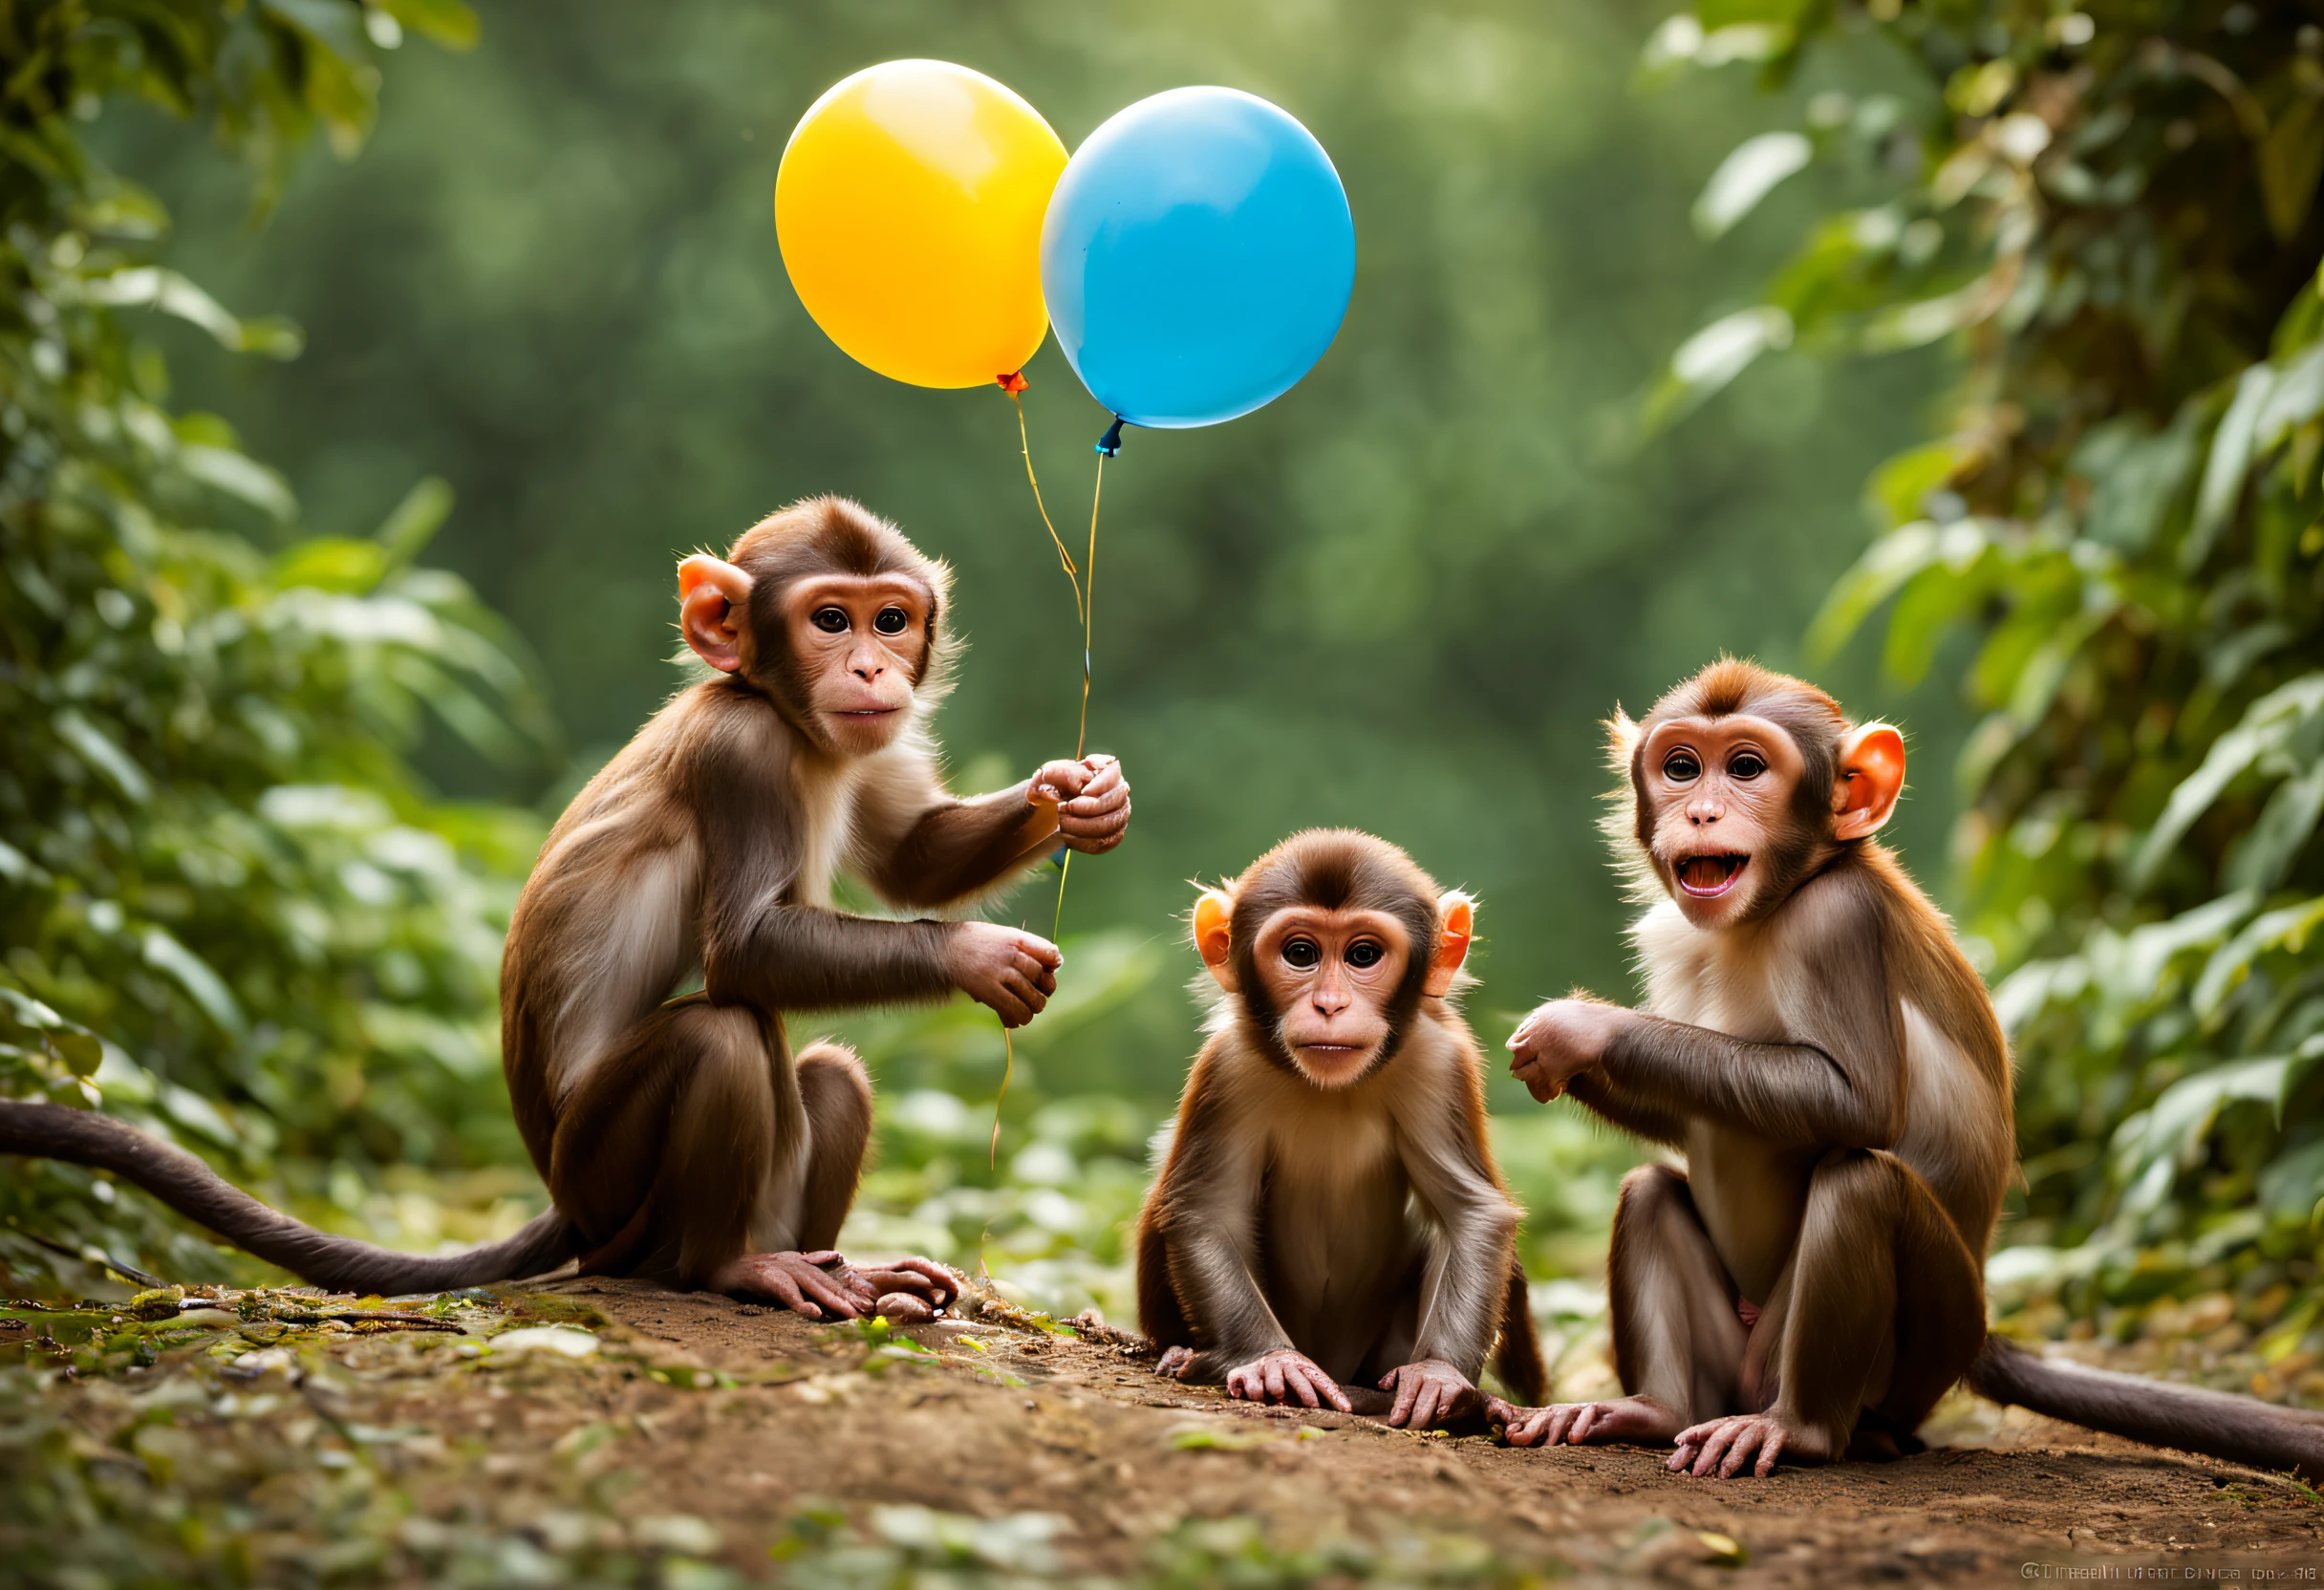 "(最好的品質,超詳細),一群猴子在玩氣球,樂趣,喜悅,好奇的猴子,精力充沛的猴子,頑皮的猴子,森林背景,彩色氣球,歡樂的氣氛,鮮豔的色彩,表情豐富的臉孔,蓬鬆的毛皮,惡作劇的表情,猴子的滑稽動作,快樂時光,猴子的自然棲息地,野生動物攝影,動作鏡頭,猴子家族,猴子兄弟姊妹,情緒,互動遊戲,激动,動物行為,令人愉快的場景,散景燈,美麗的大自然,綠葉樹木,陽光照射的森林,游戏时间,活躍的想像力,樂趣-filled environment,令人振奋的氛围,移动,跳躍的猴子,氣球爆裂,惡作劇,胡鬧,富有想像力的遊戲,纯真,laughter and 喜悅"